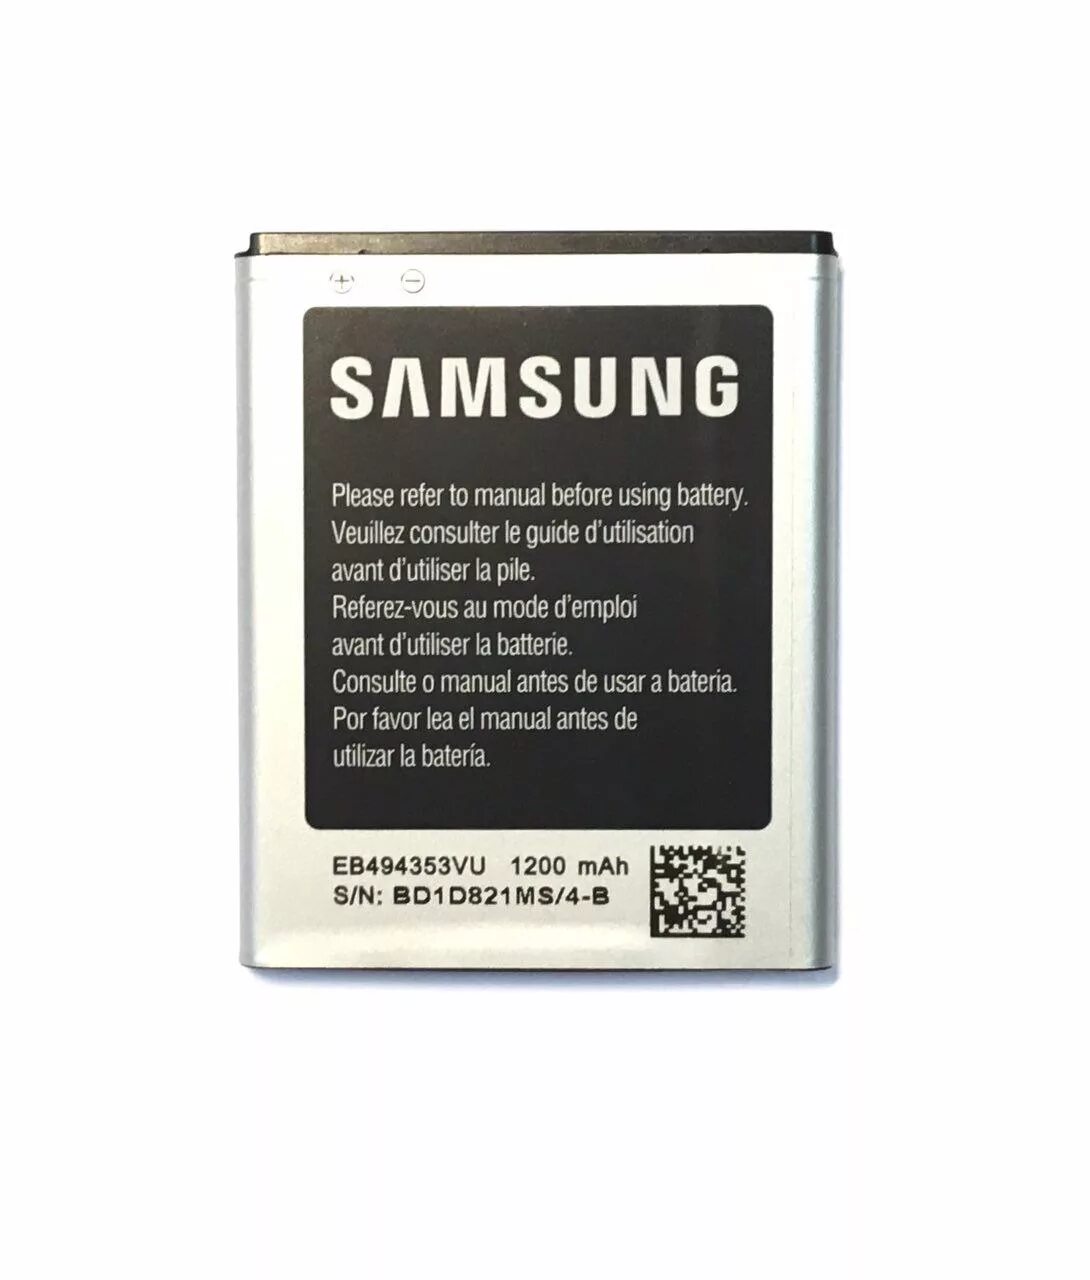 Купить аккумулятор samsung оригинал. Самсунг gt s5310 аккумулятор. Samsung gt s3100 аккумулятор оригинал. Аккумулятор для Samsung Galaxy j7 Neo. Gt5310 АКБ.